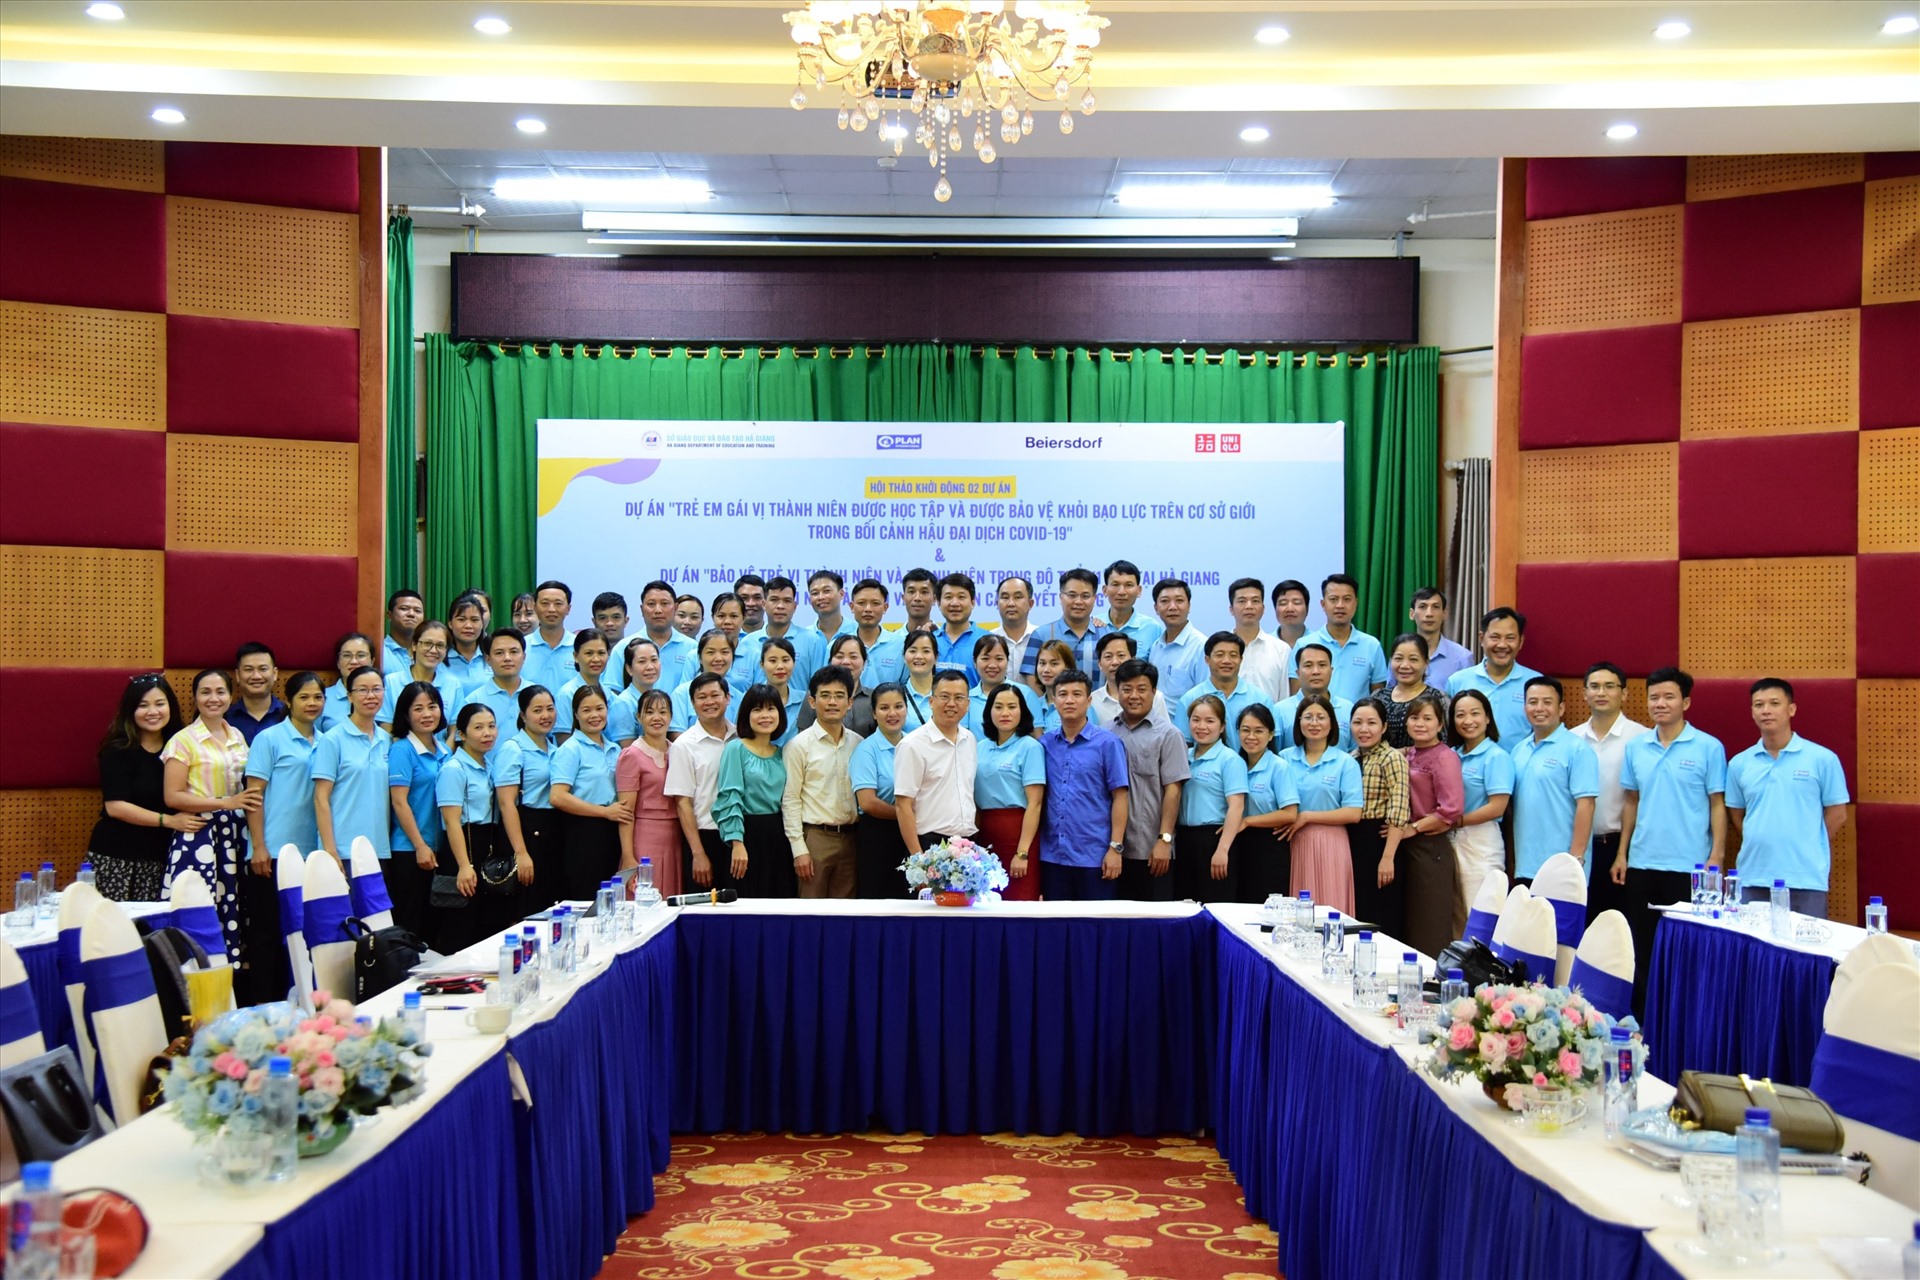 Hội thảo diễn ra thành công với nhiều chia sẻ, tham luận về thực trạng bảo vệ trẻ vị thành niên và thanh niên DTTS tại tỉnh Hà Giang. Ảnh: Ban tổ chức